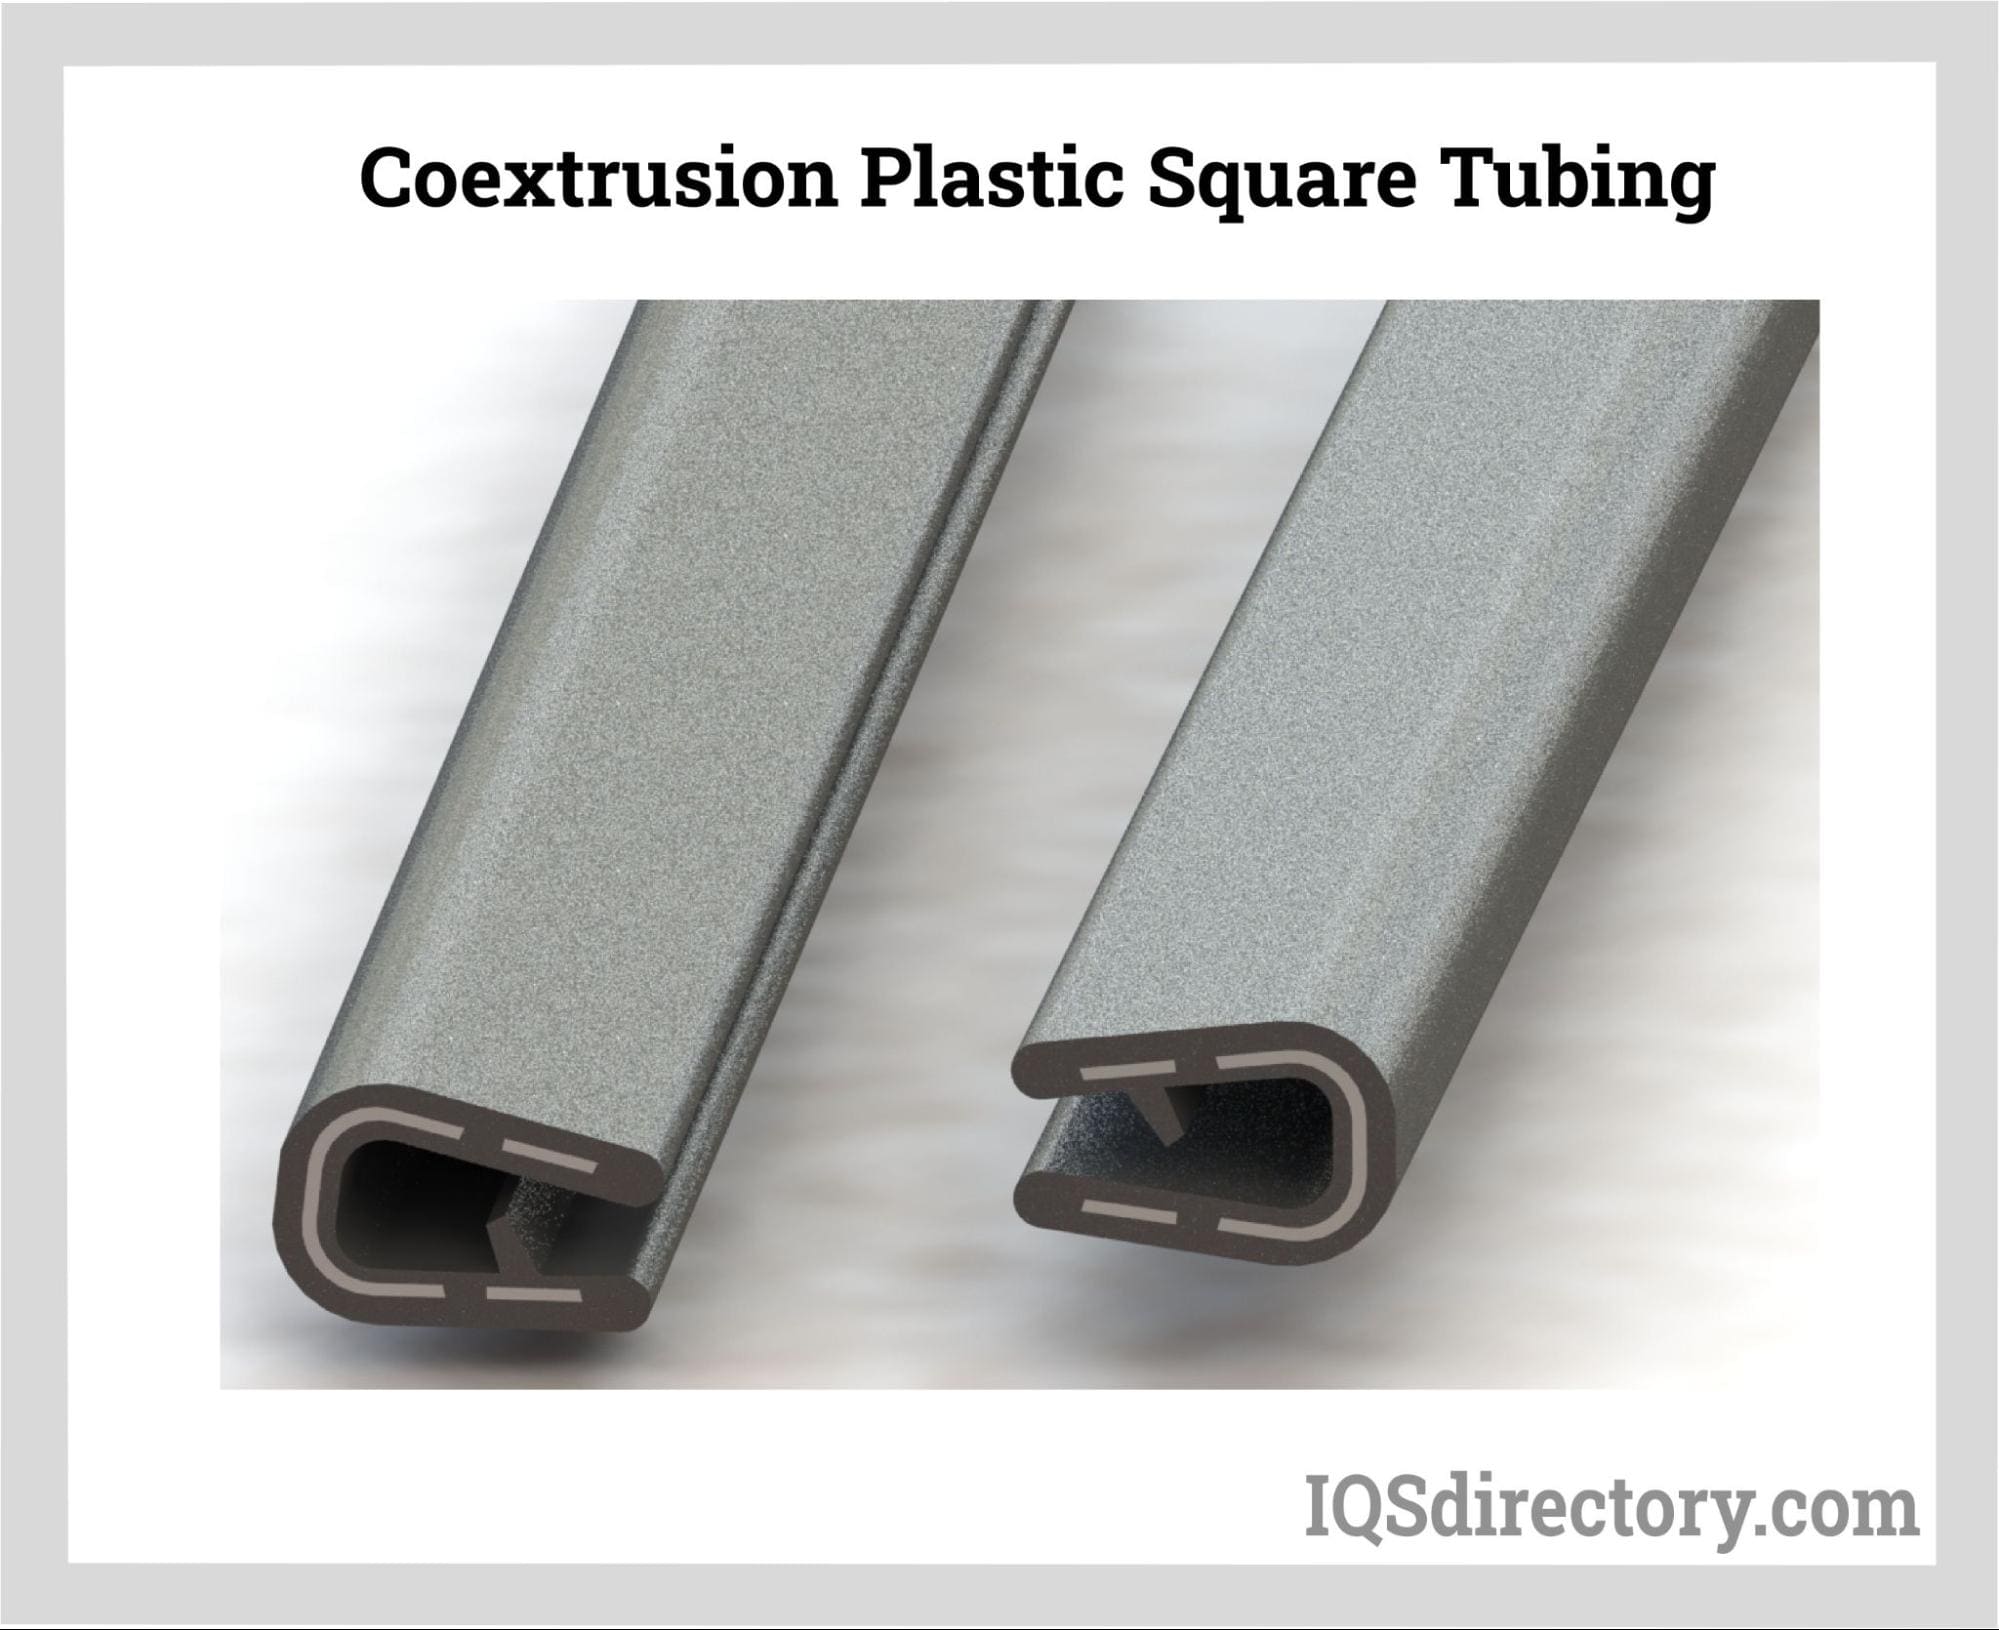 Coextrusion Plastic Square Tubing